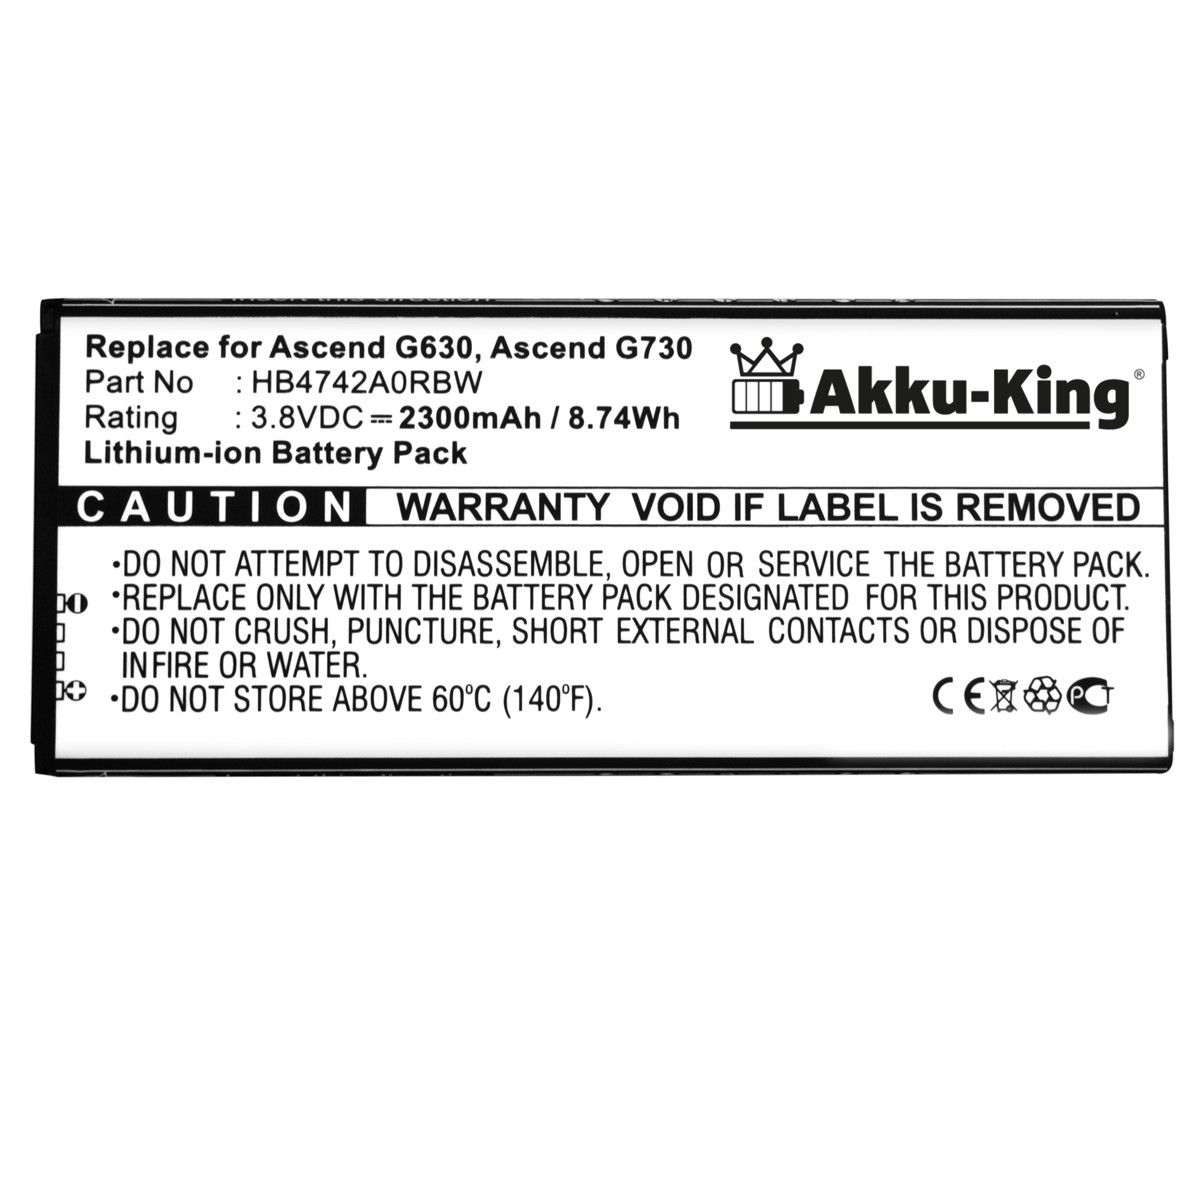 AKKU-KING Akku kompatibel mit Huawei Handy-Akku, Volt, HB4742A0RBC 3.8 2300mAh Li-Ion